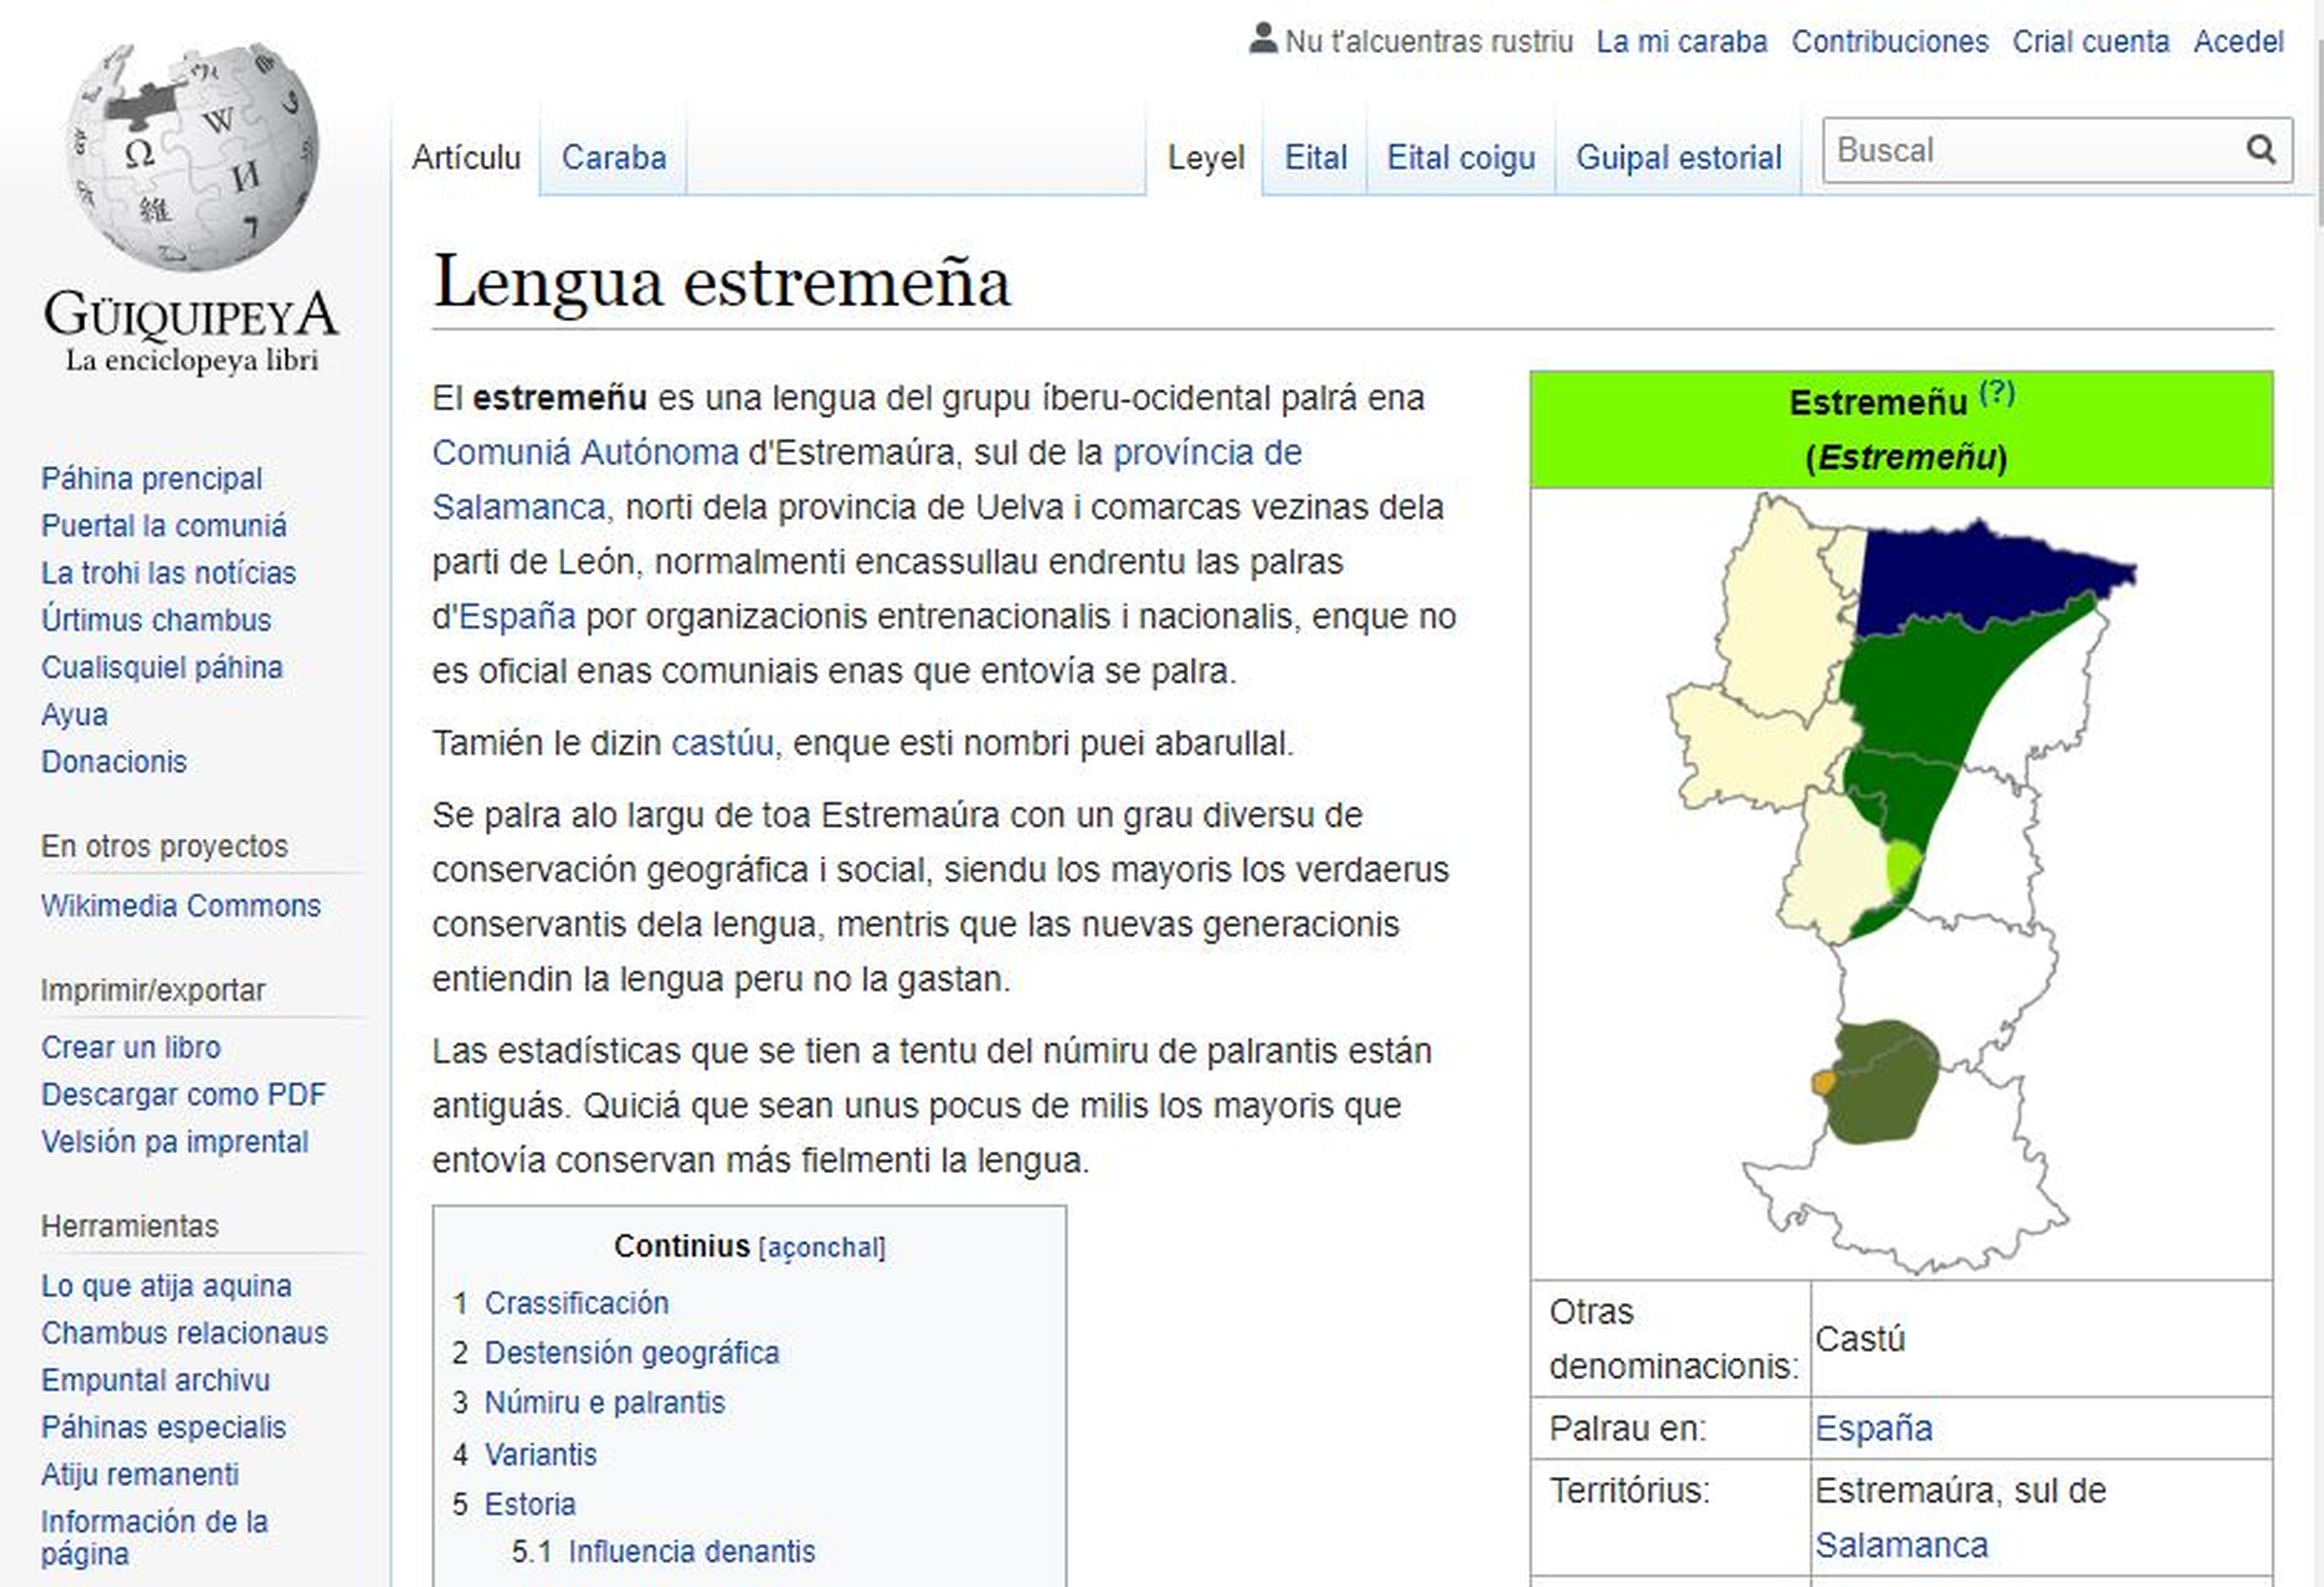 Página en extremeño en Wikipedia.